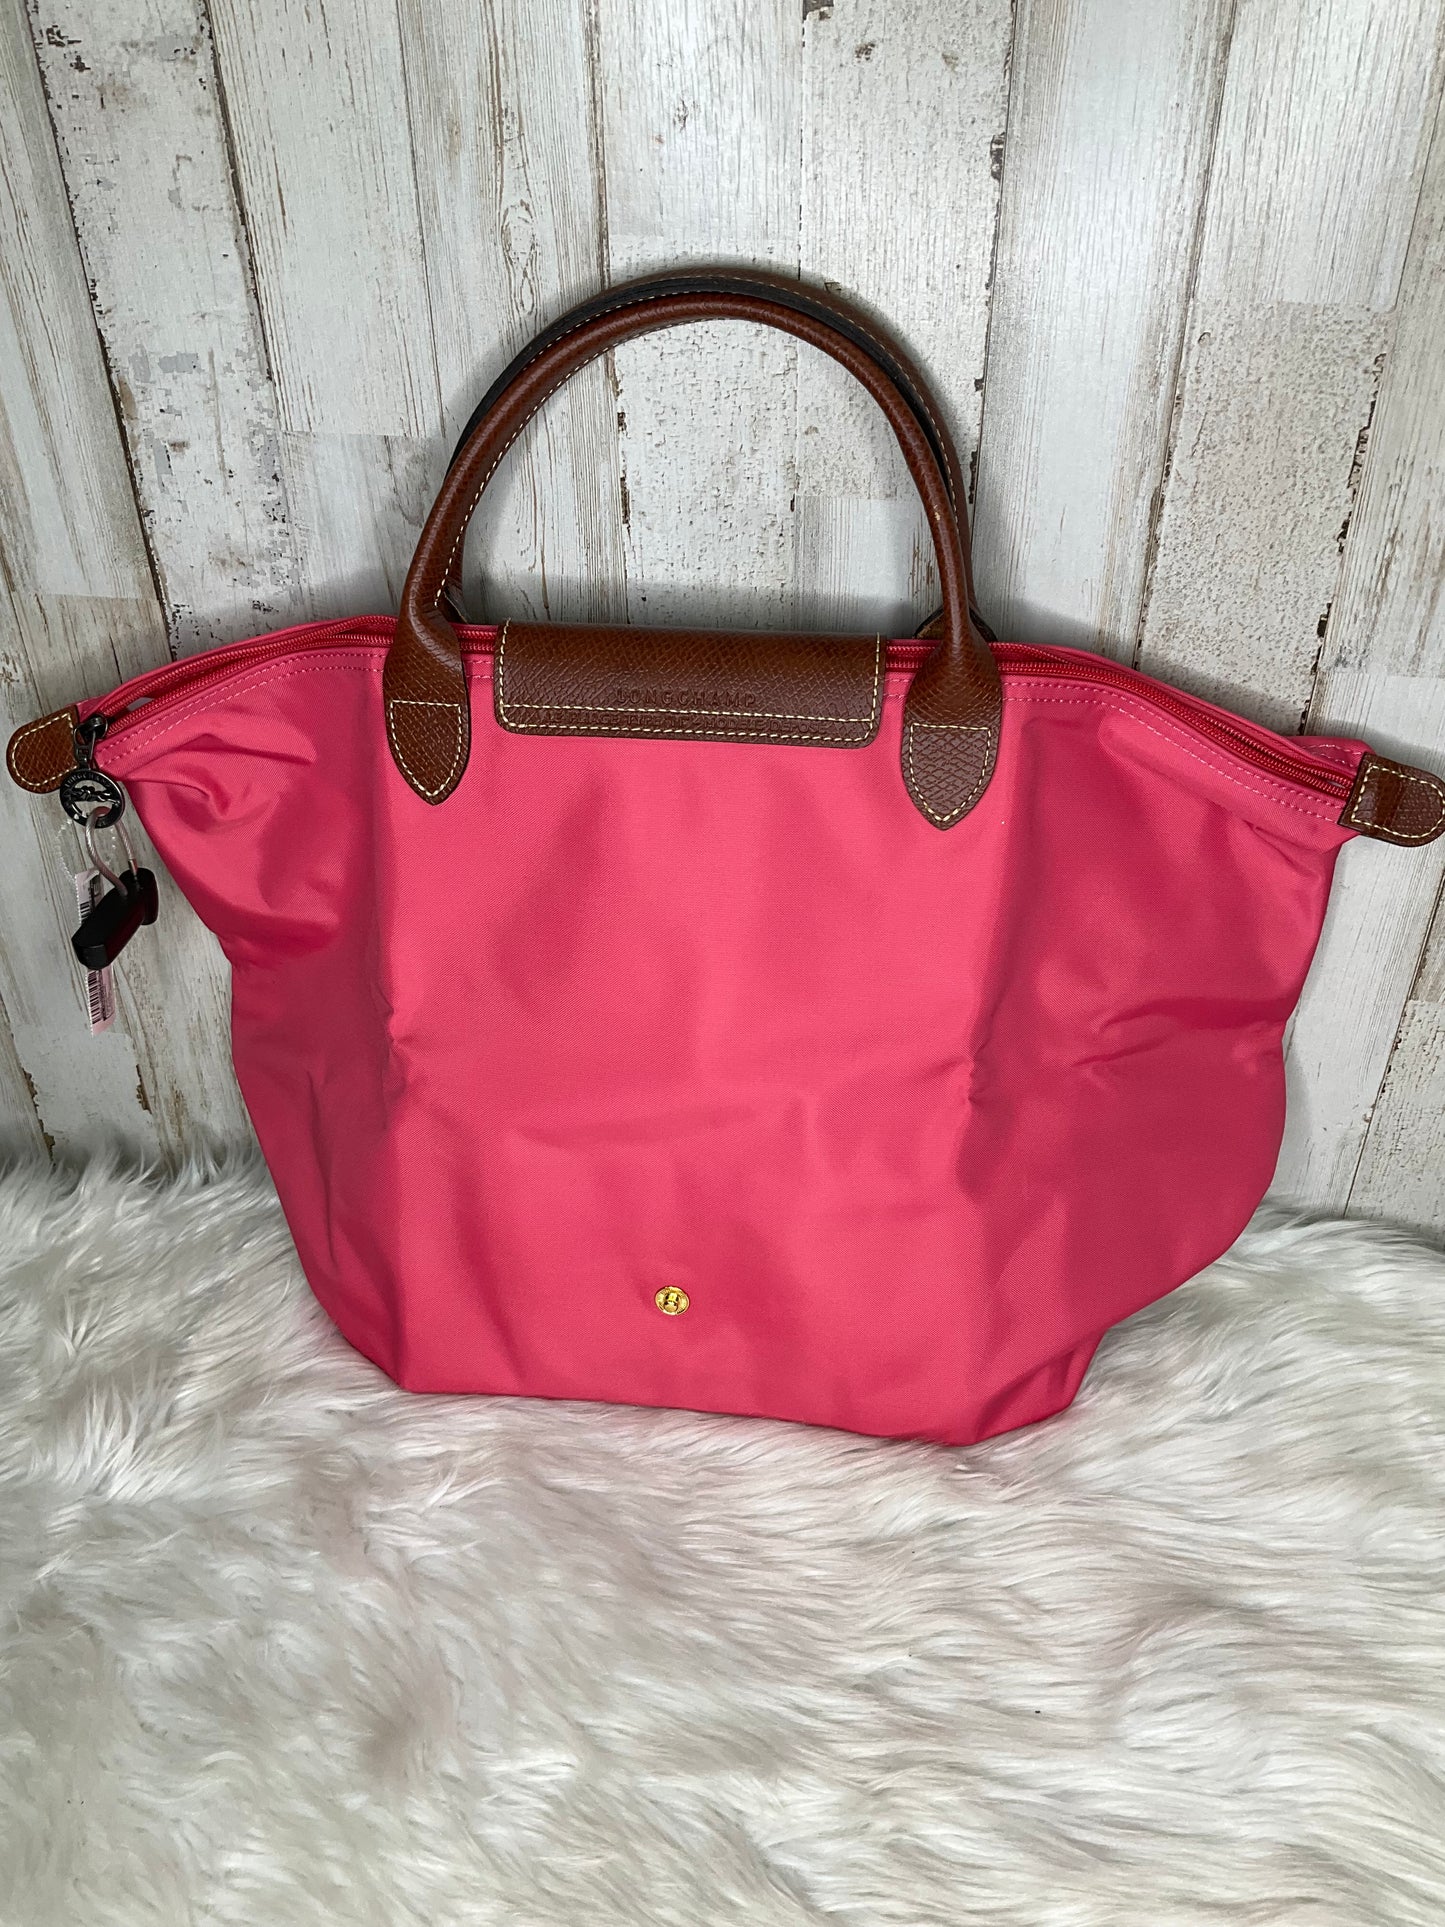 Handbag By Longchamp  Size: Large